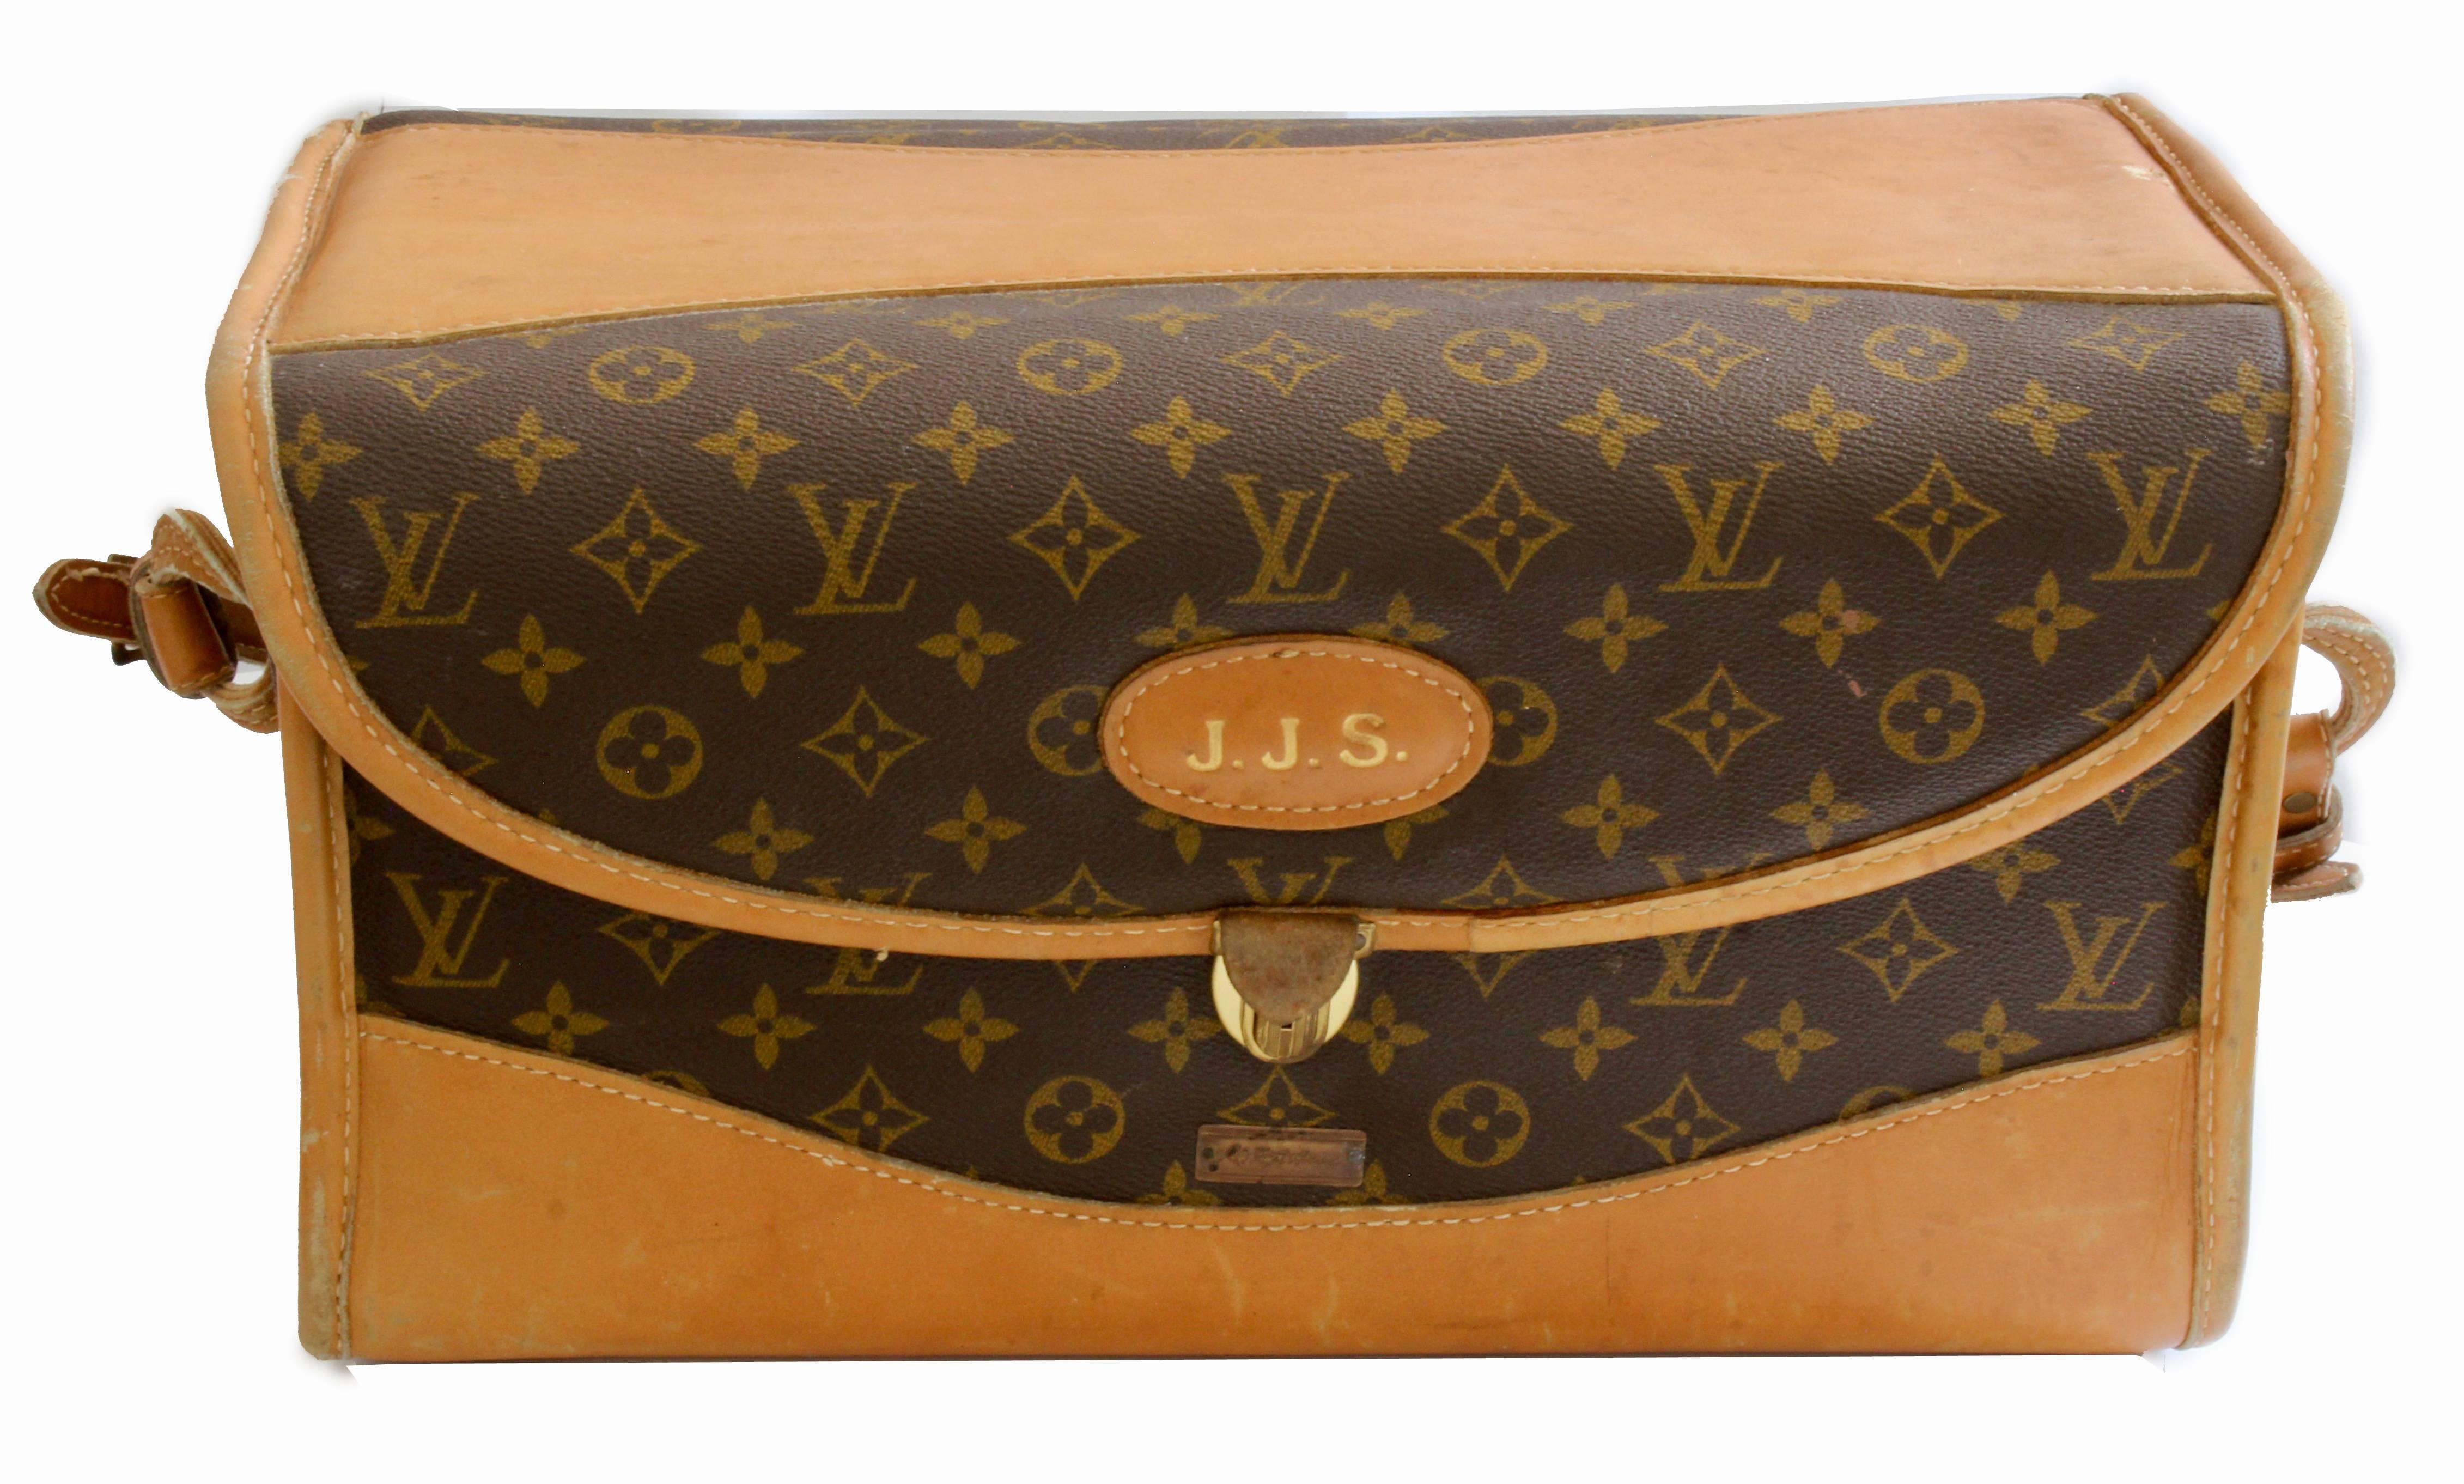 Reisen Sie stilvoll mit dieser schicken Schönheits- oder Reisetasche:: die in den 70er Jahren von The French Company unter spezieller Lizenz von Louis Vuitton hergestellt wurde:: lange bevor LV eine Boutique-Präsenz in den USA hatte. Diese LV x